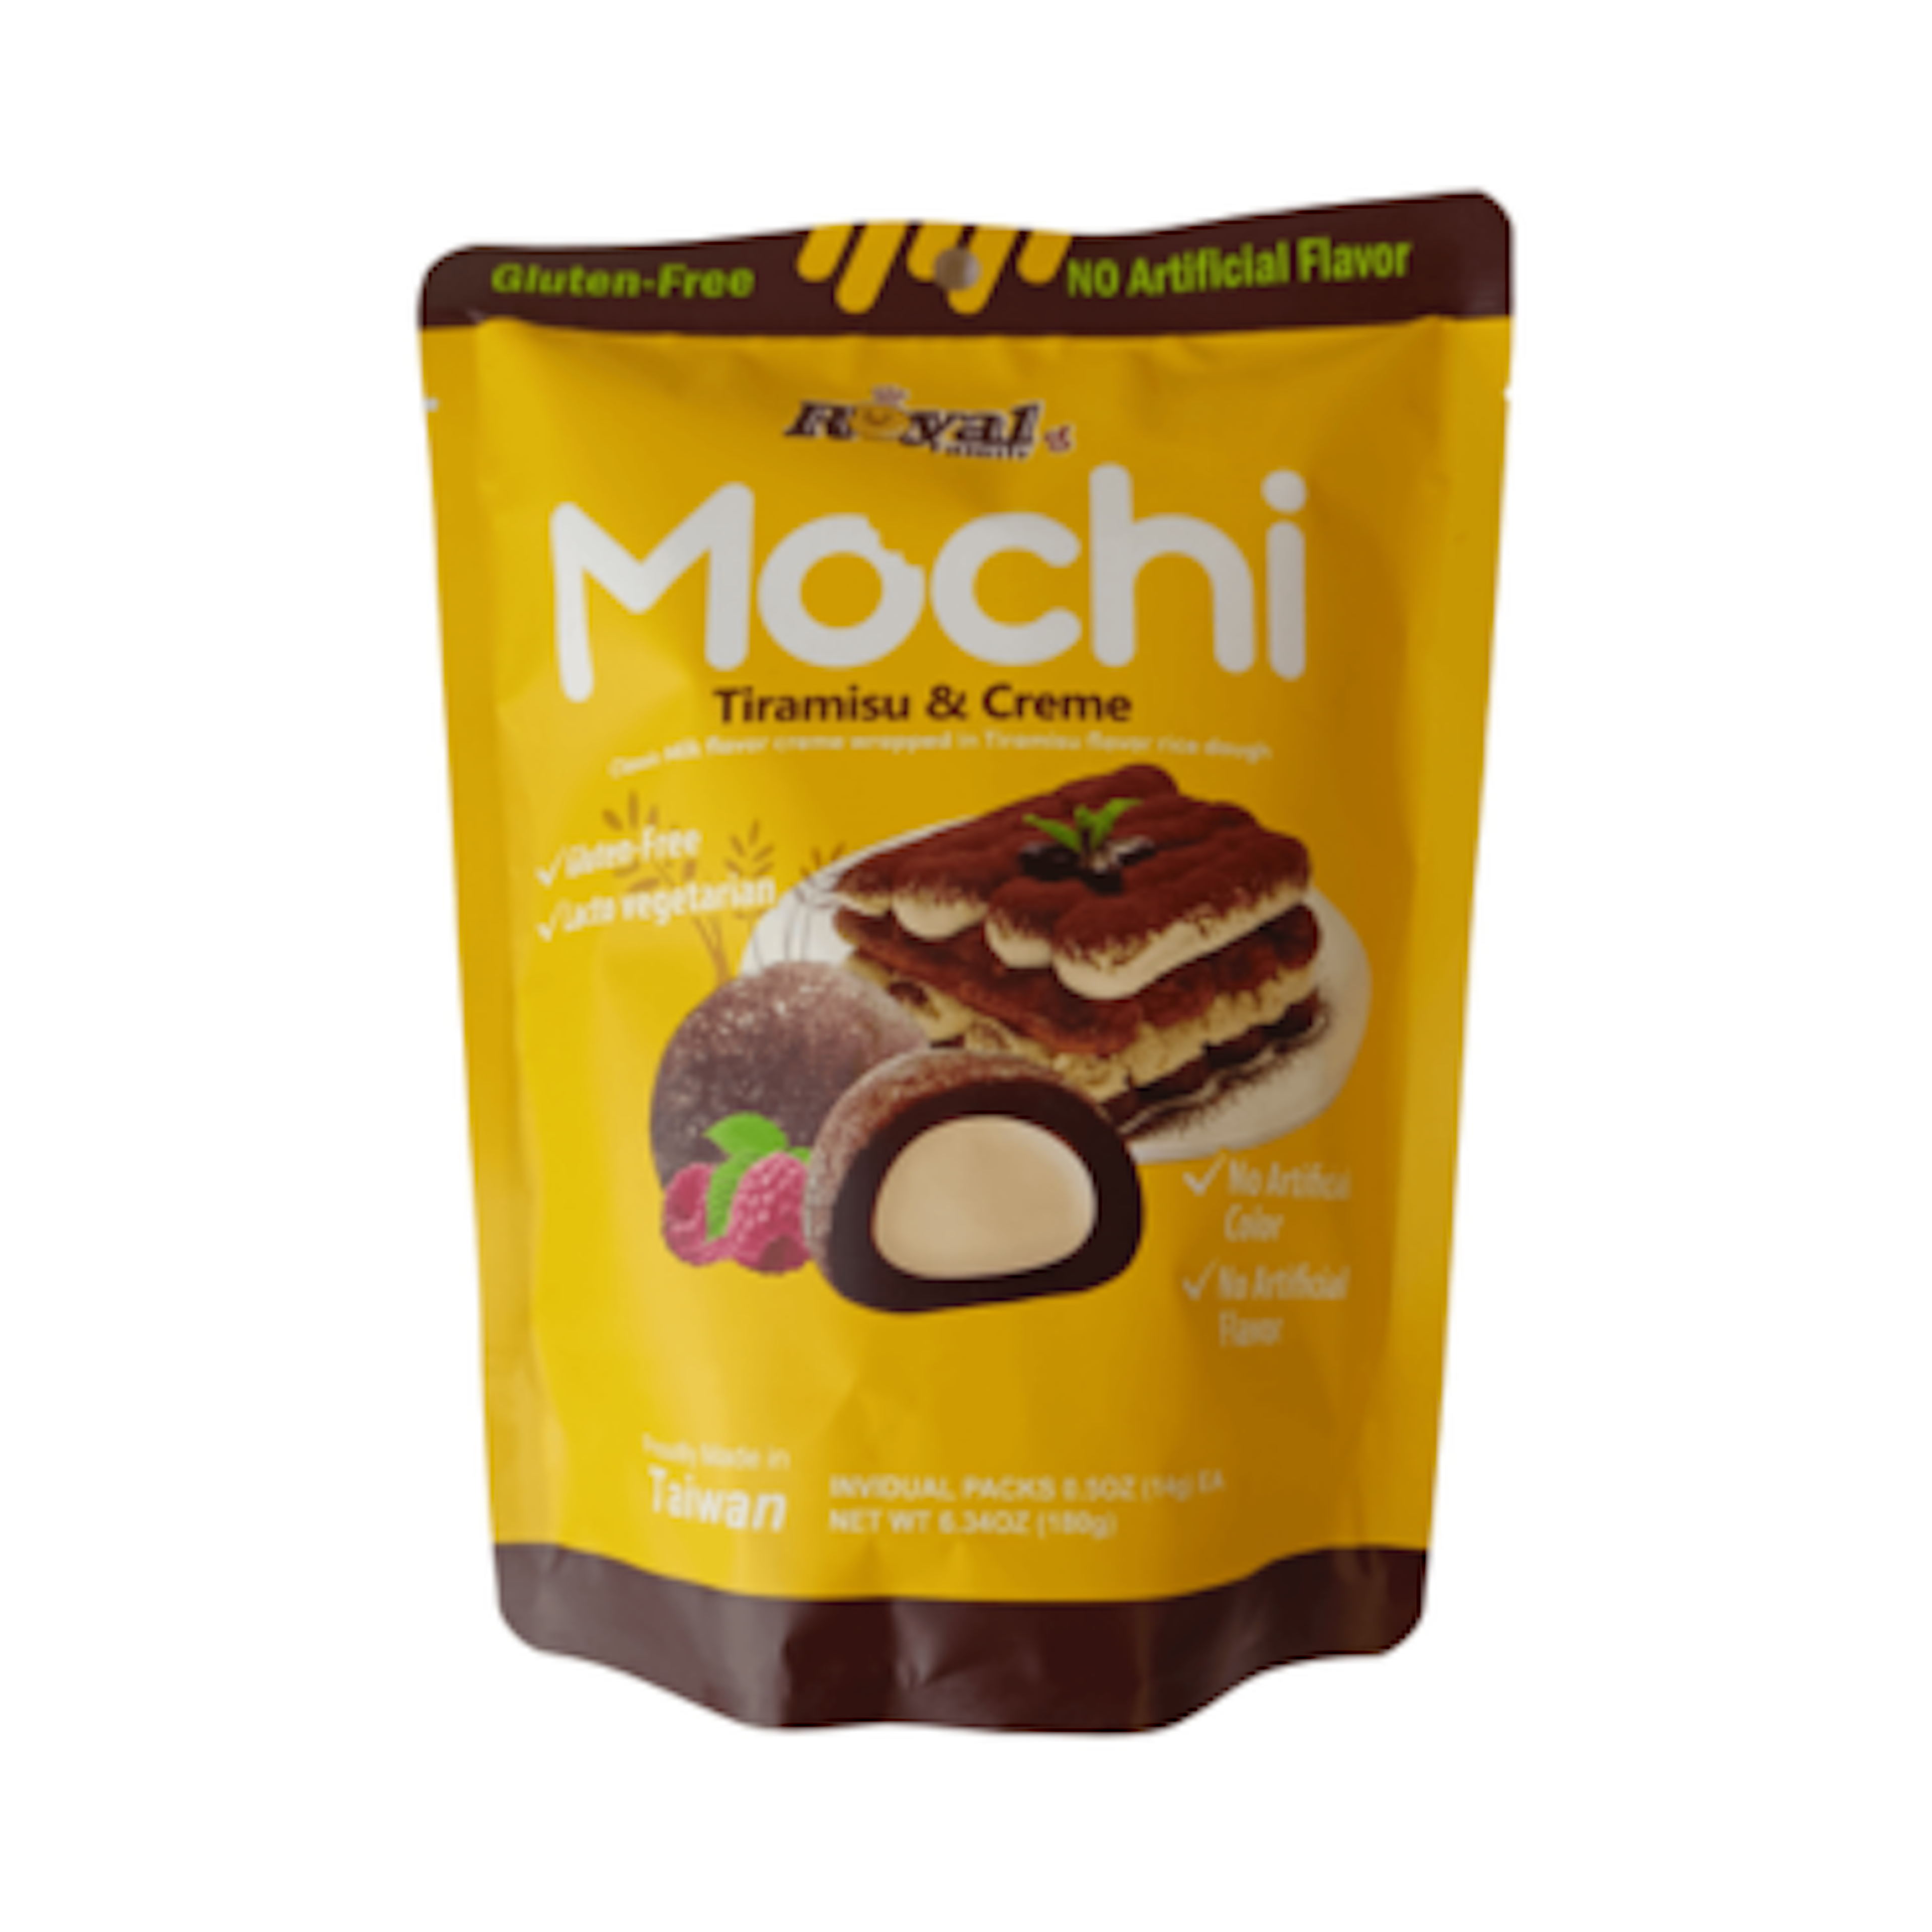 Royal Family Mochi Tiramisu & Creme - Zarte Mochi ohne künstliche Zusatzstoffe, 180g